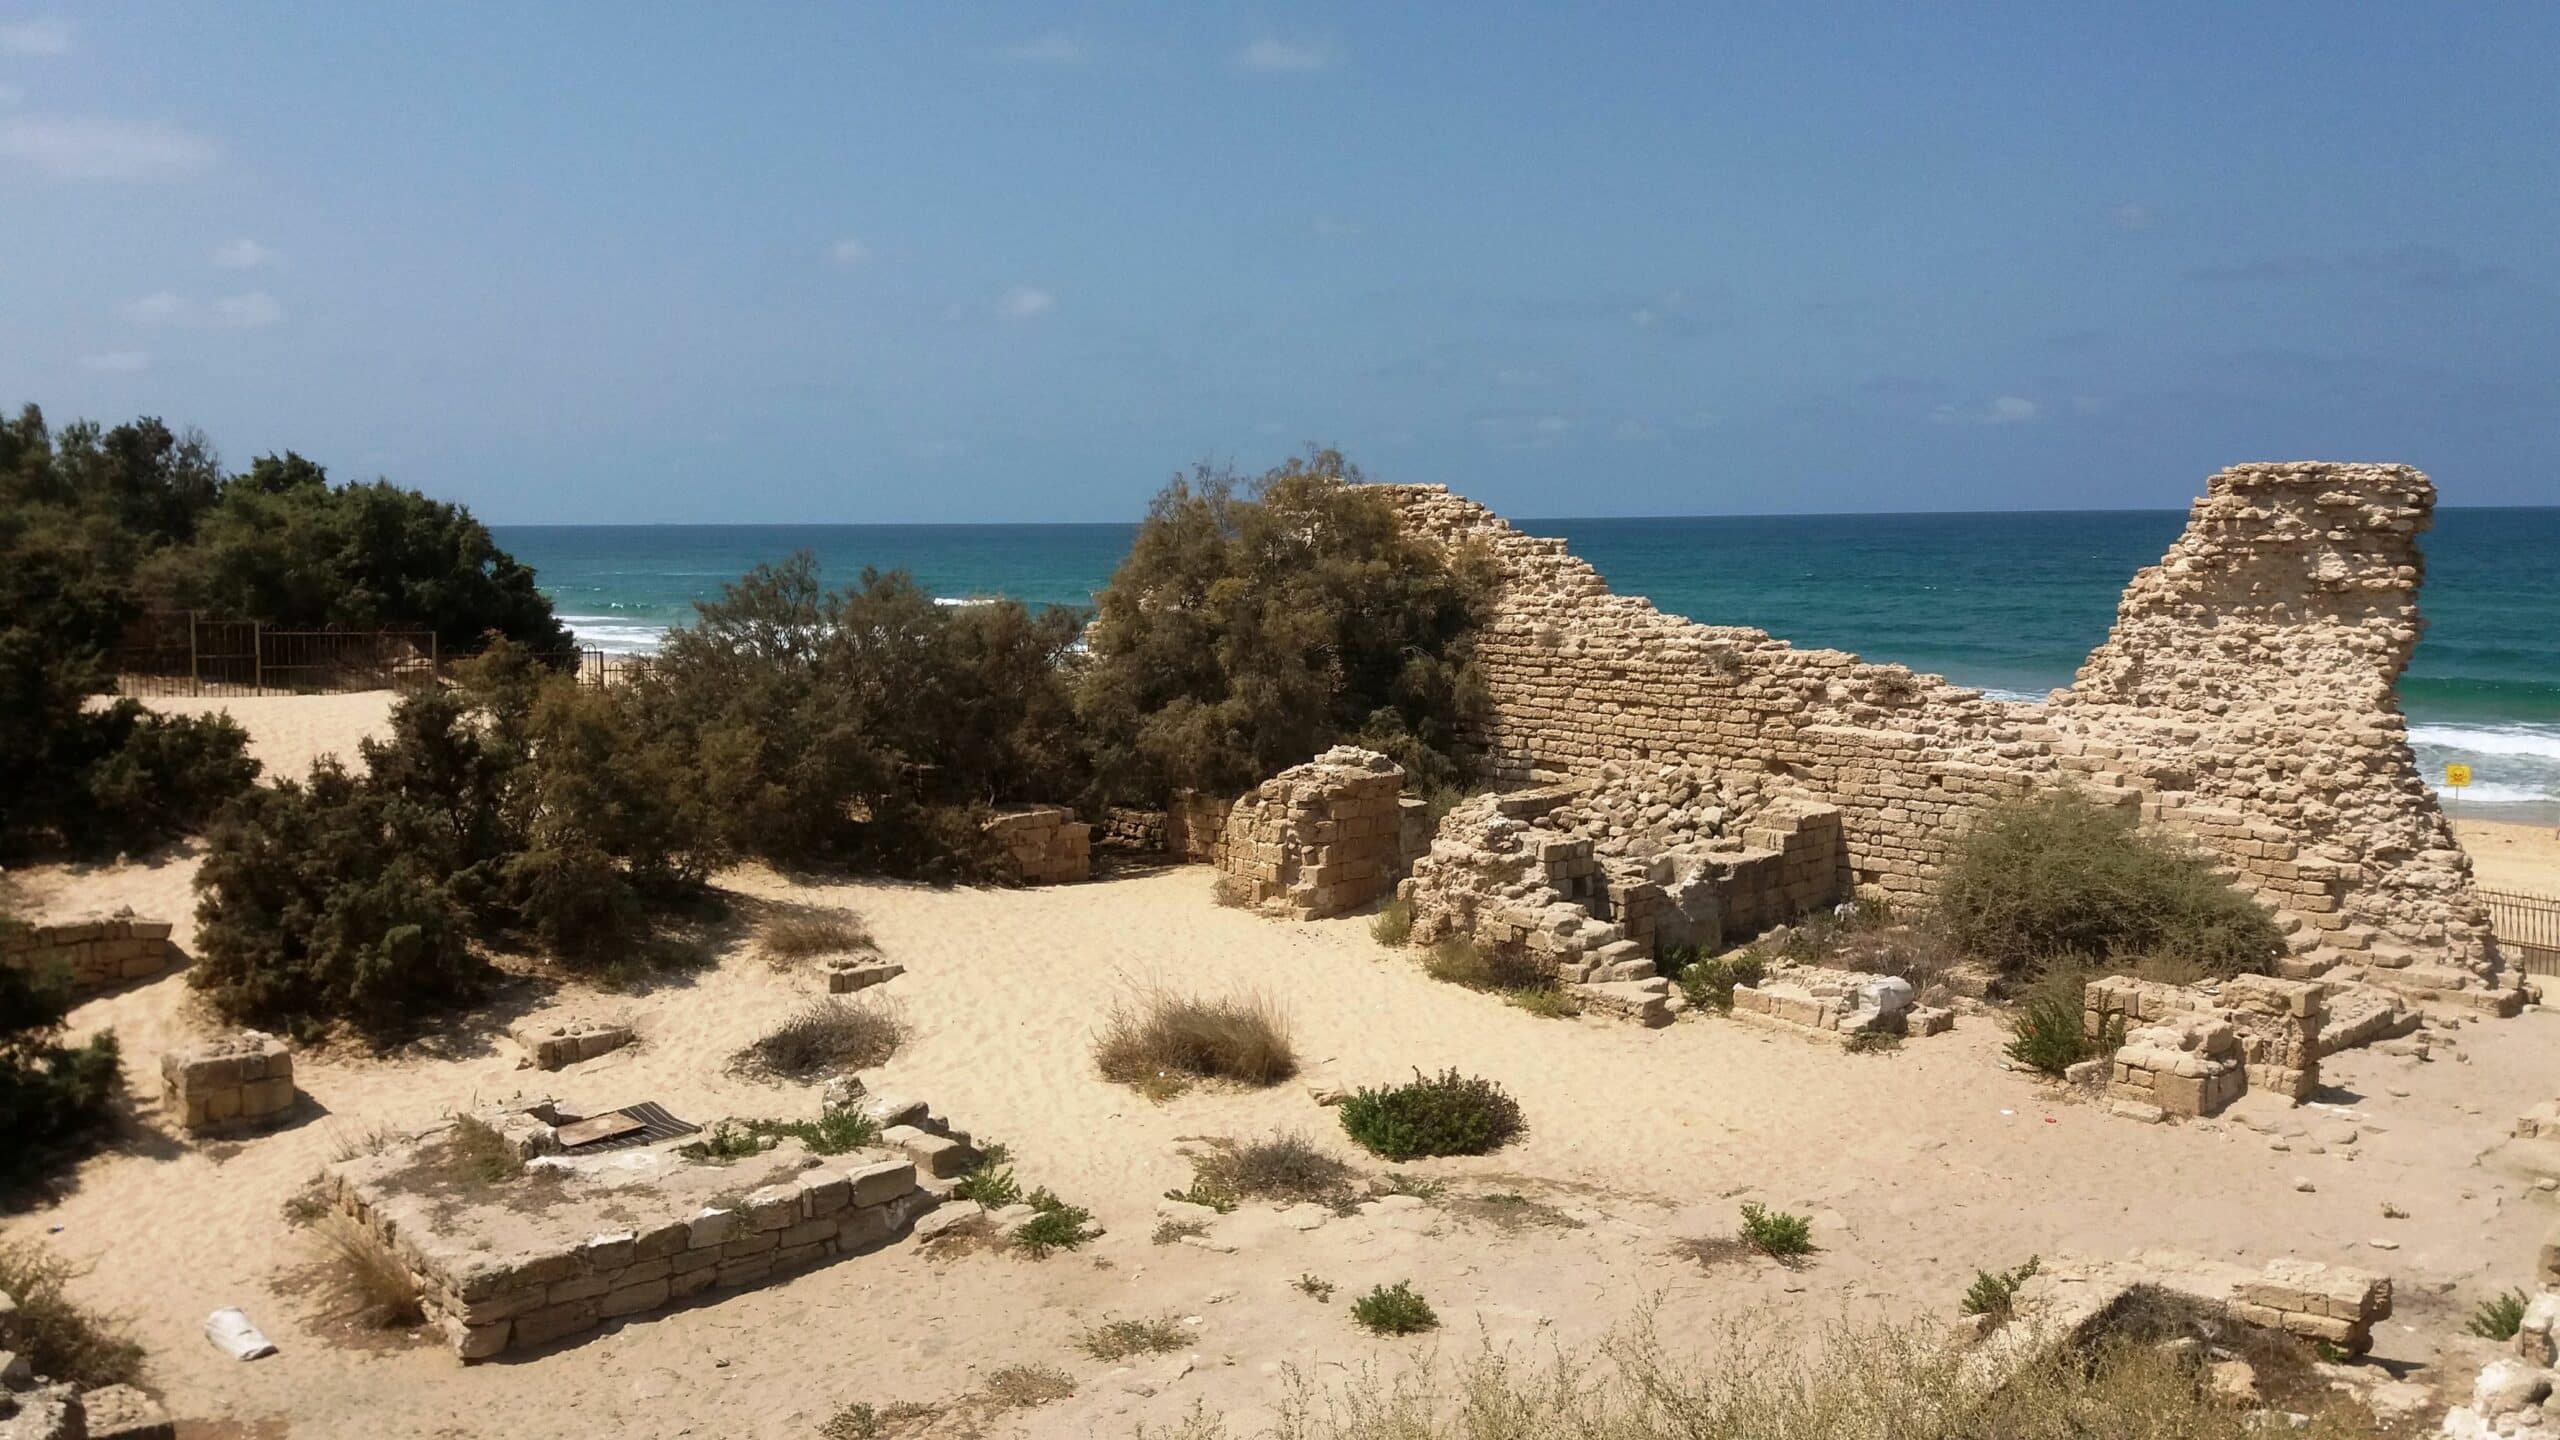 מצודת אשדוד ים (קלעת אל מינה) היא נקודת תצפית בלתי מוכרת אך יפהפייה על הים, העיר וסביבותיה